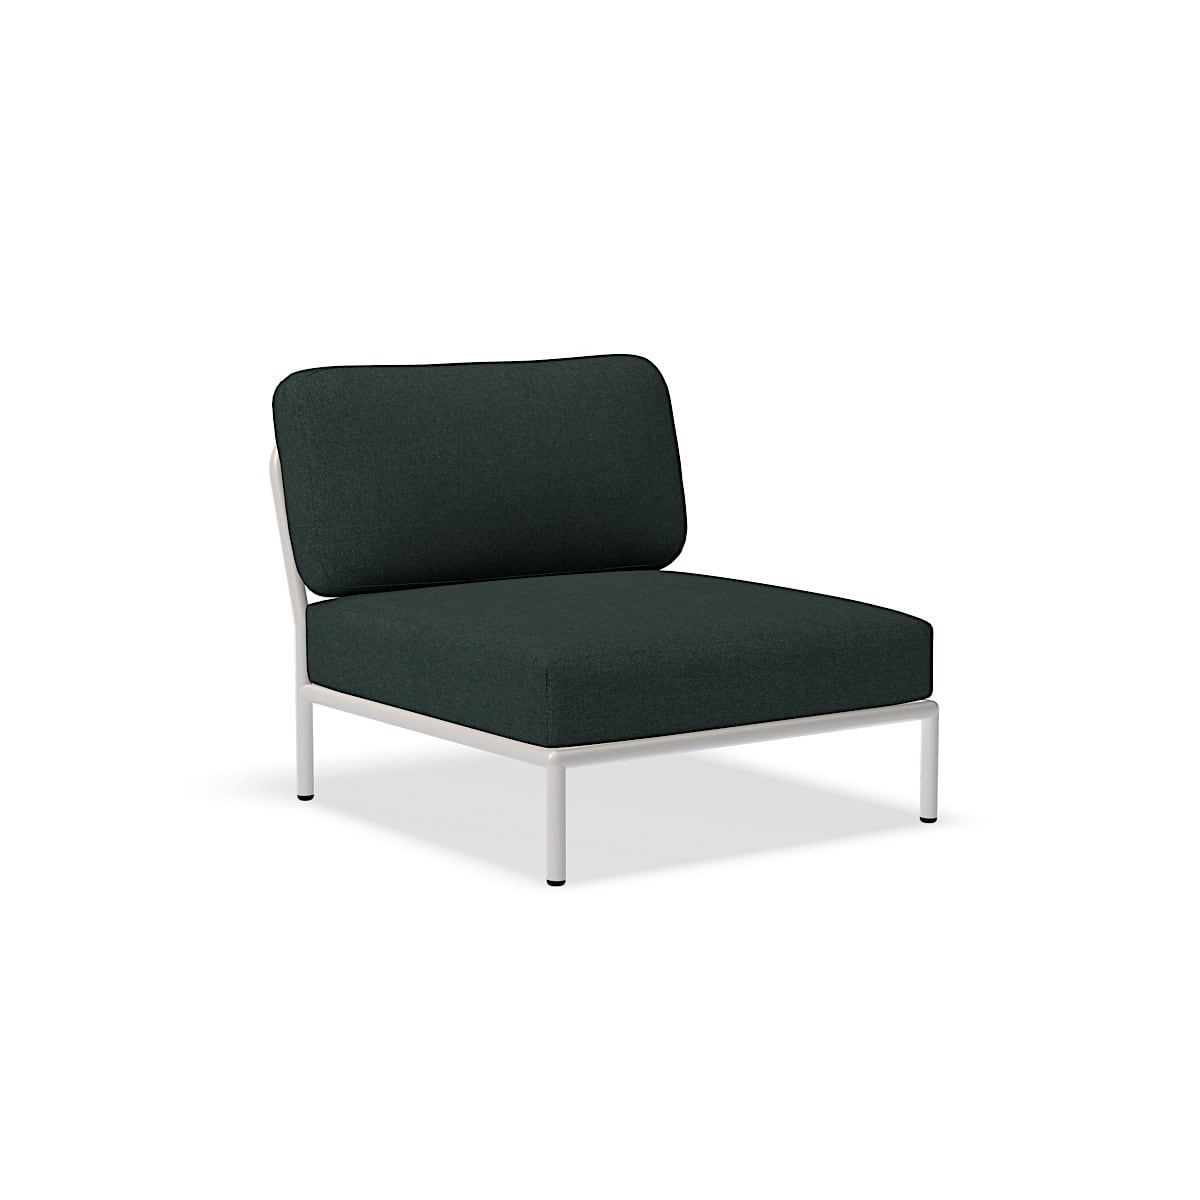 الكرسي - 12205-4443 - كرسي ، جبال الألب (HERITAGE) ، هيكل أبيض